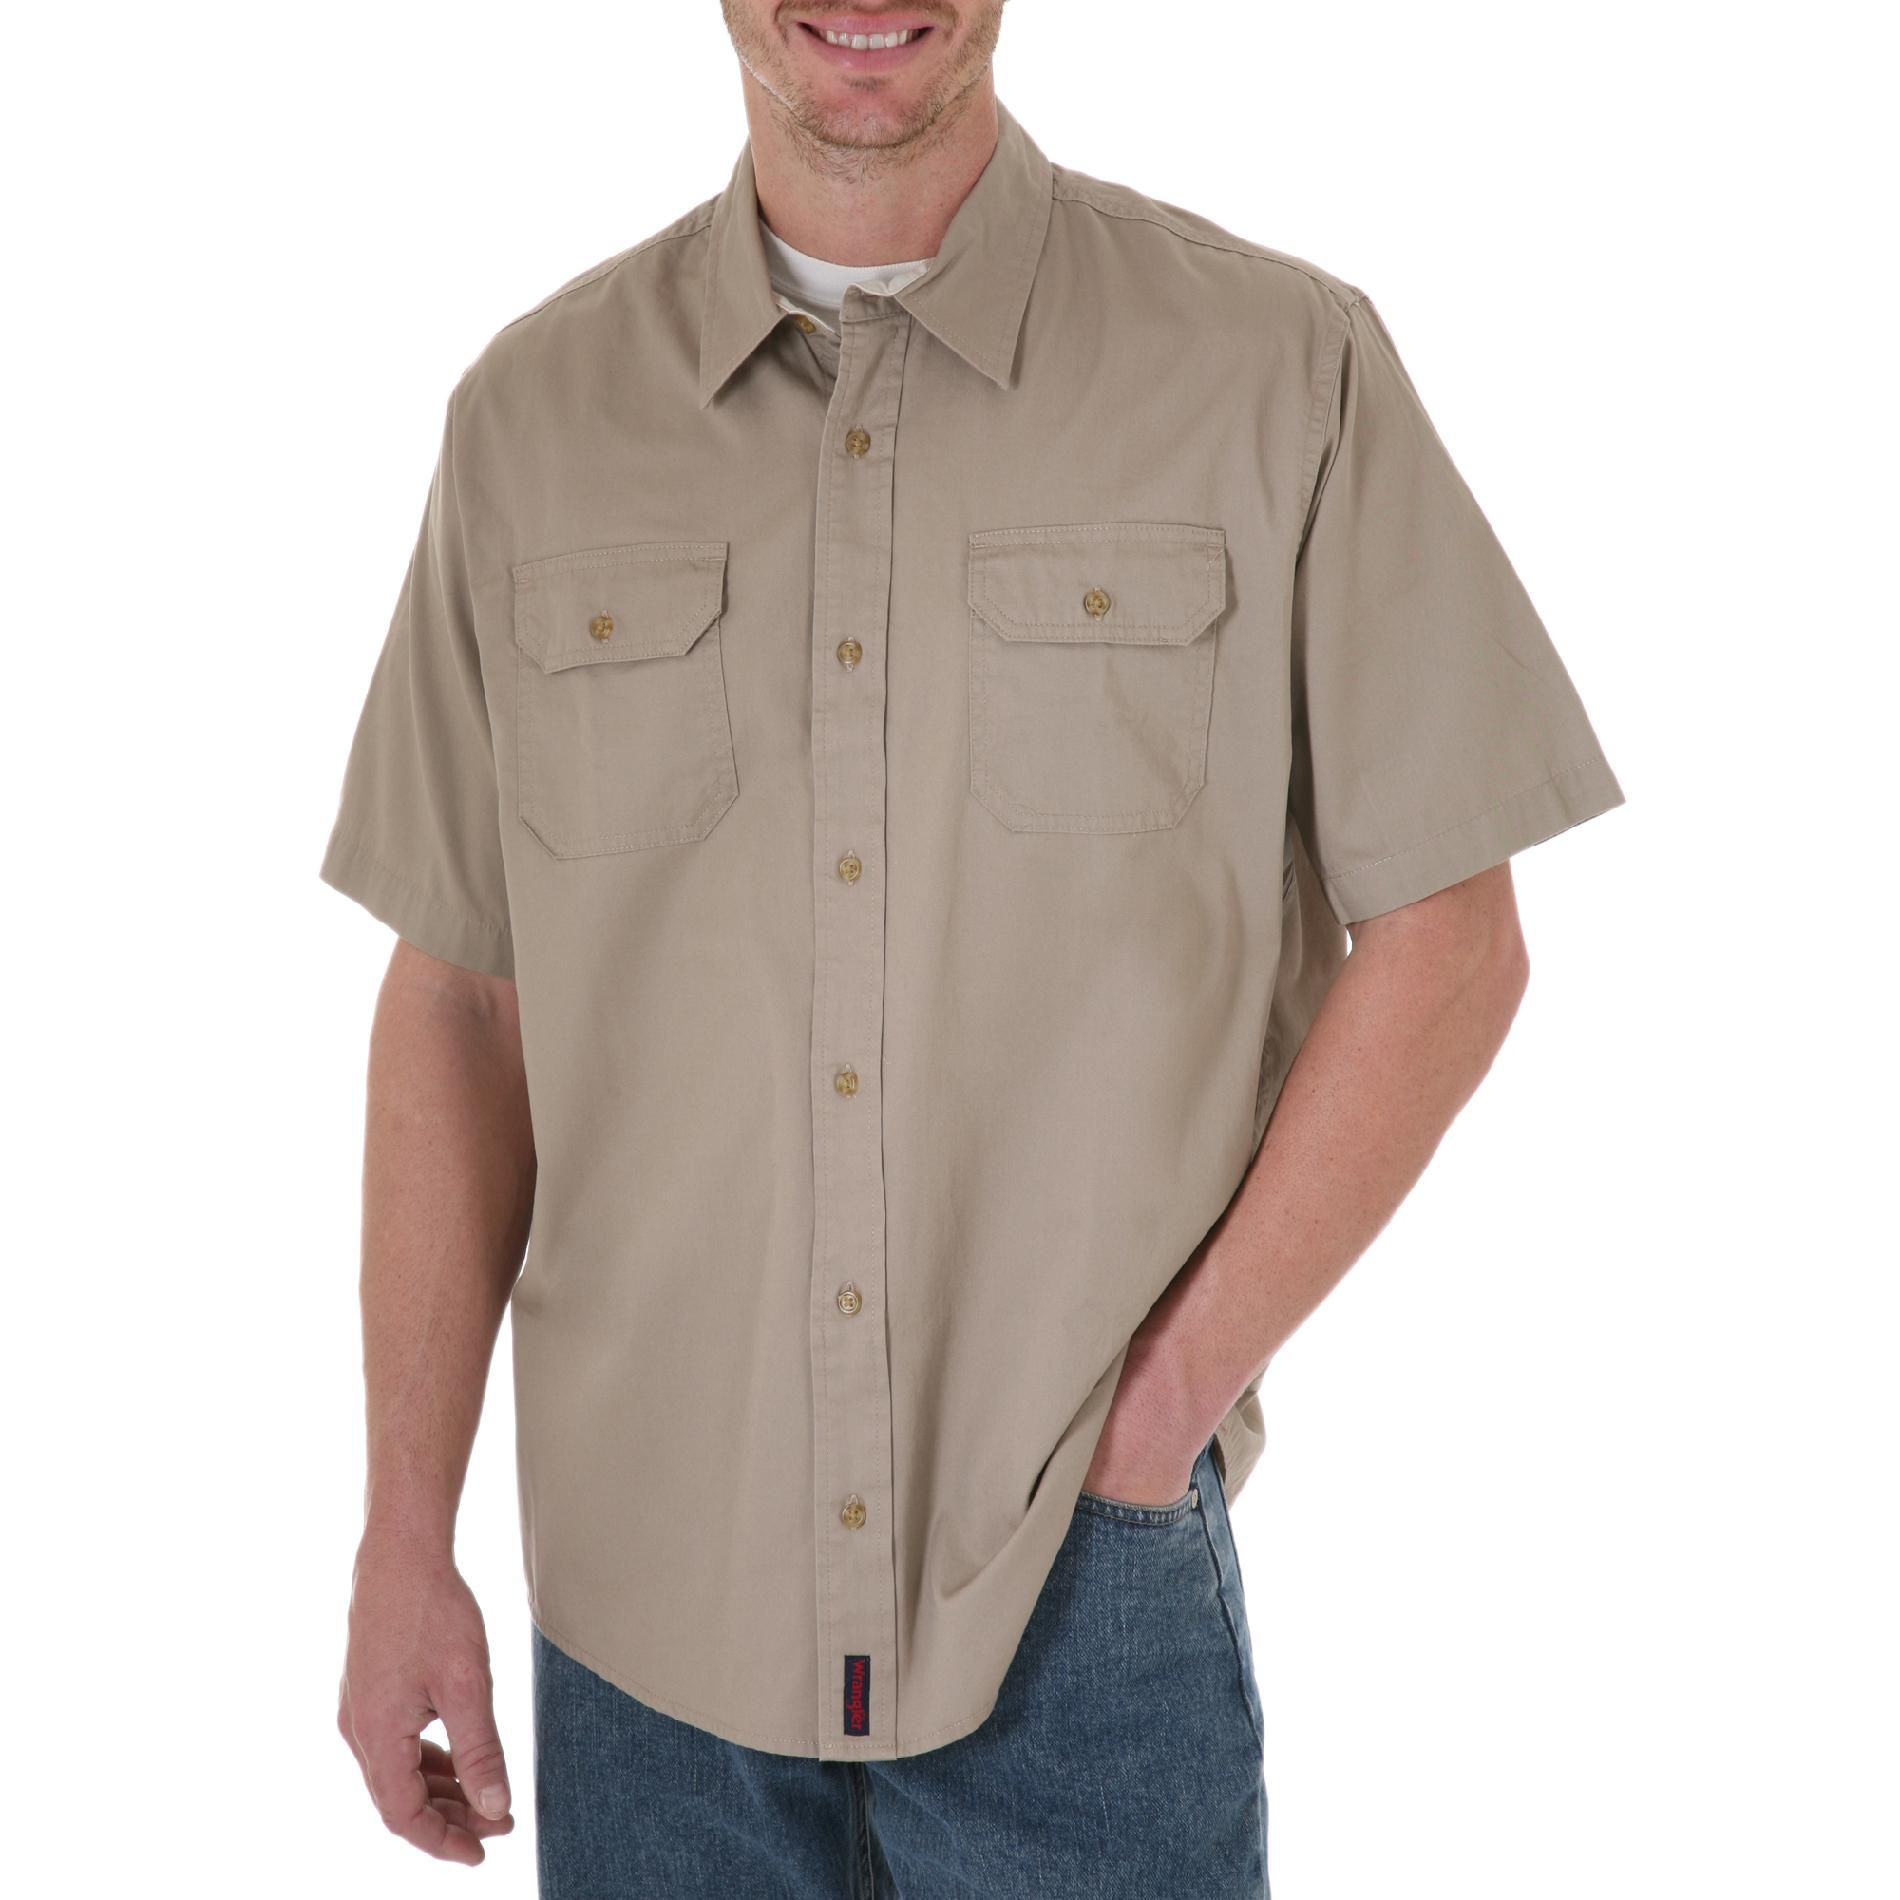 Where To Buy Wrangler Men's Short Sleeve Shirt Denim Look - Wrangler ...